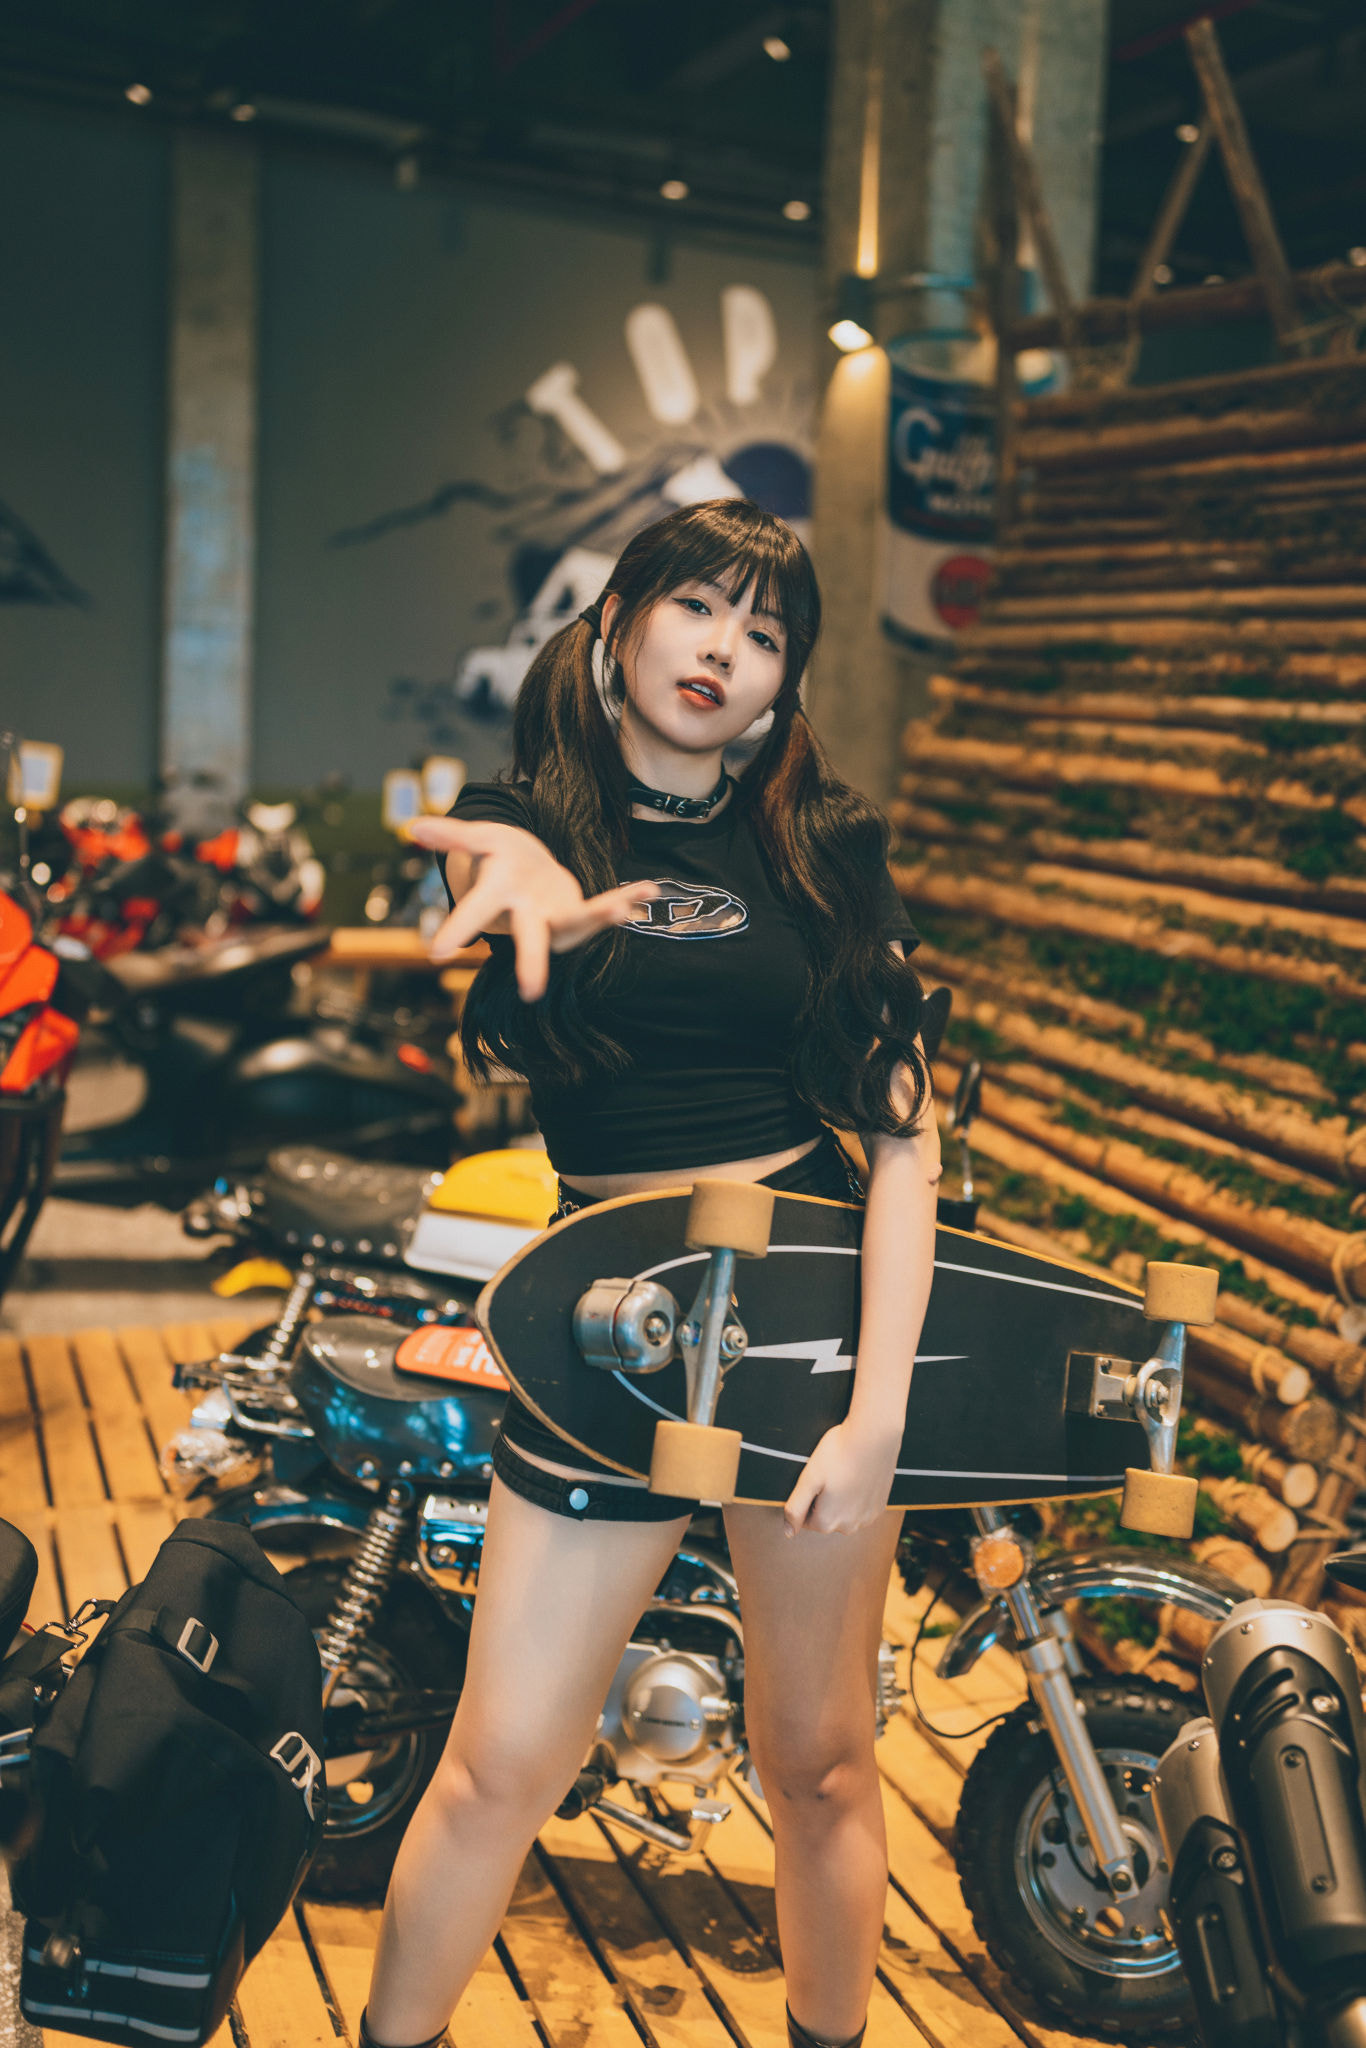 Qin Xiaoqiang Women Asian Twintails Skateboard Wheels Motorcycle Honda Shorts Dark Hair Surfskate 1366x2048